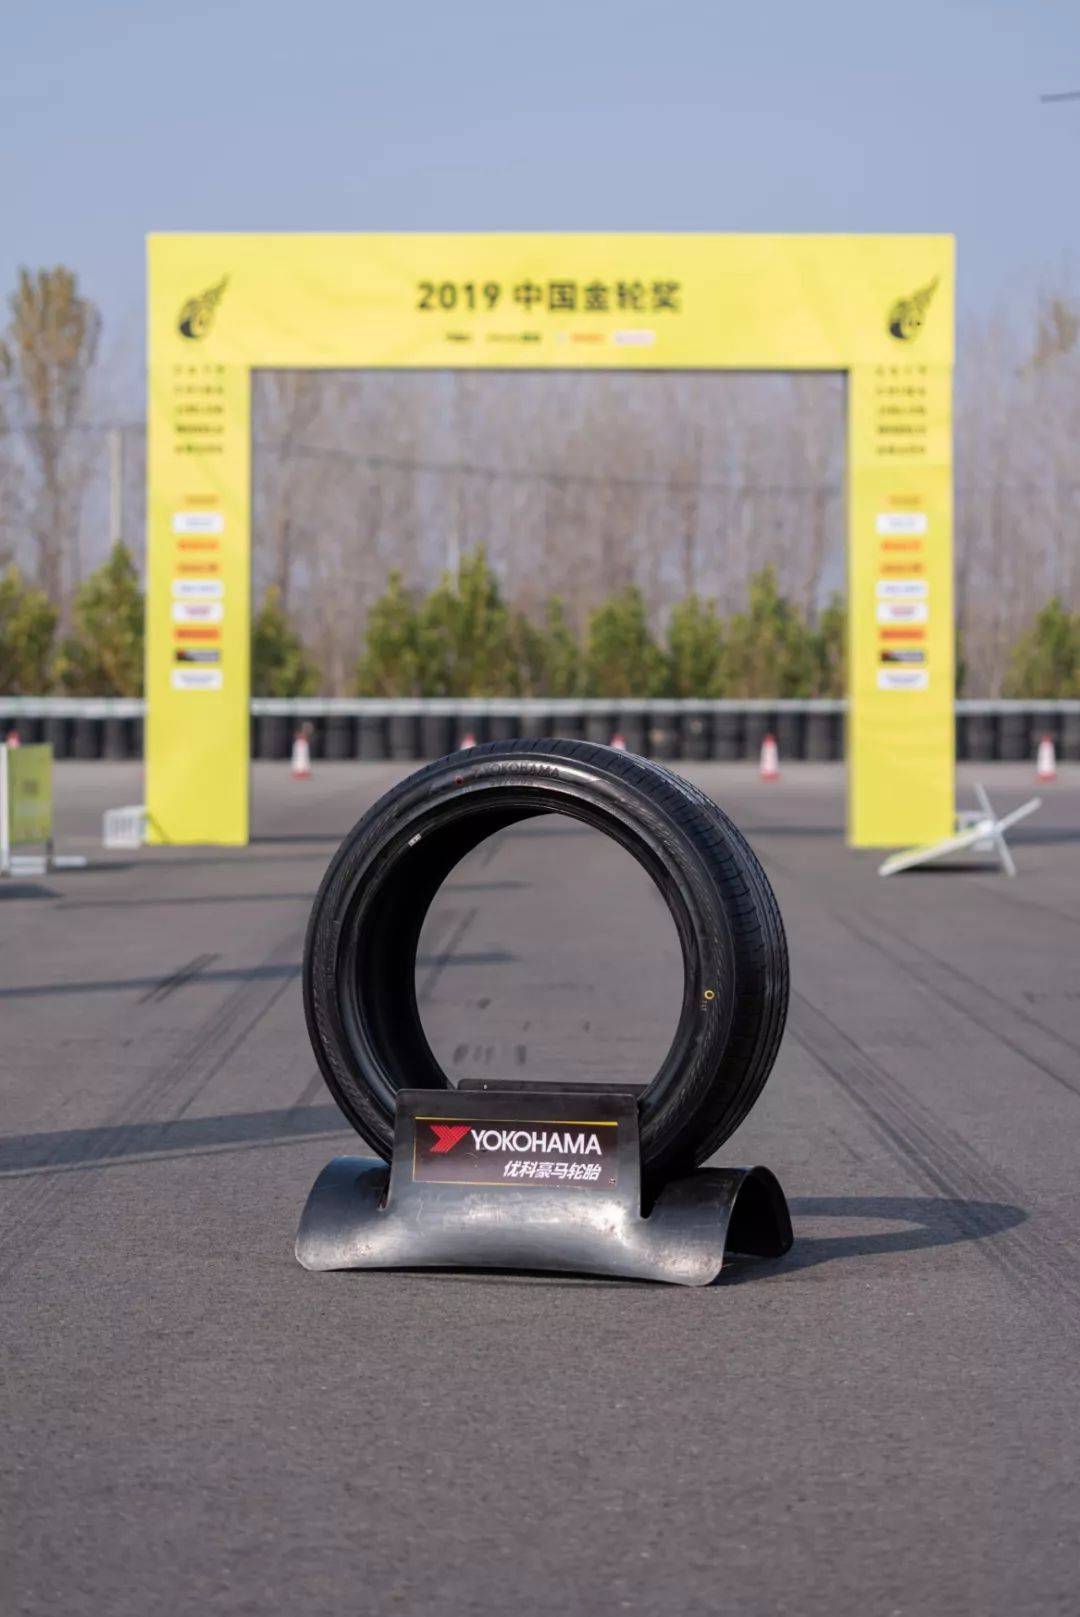 2019中国金轮奖 | 年度最佳运动轮胎一一优科豪马ADVAN dB V552